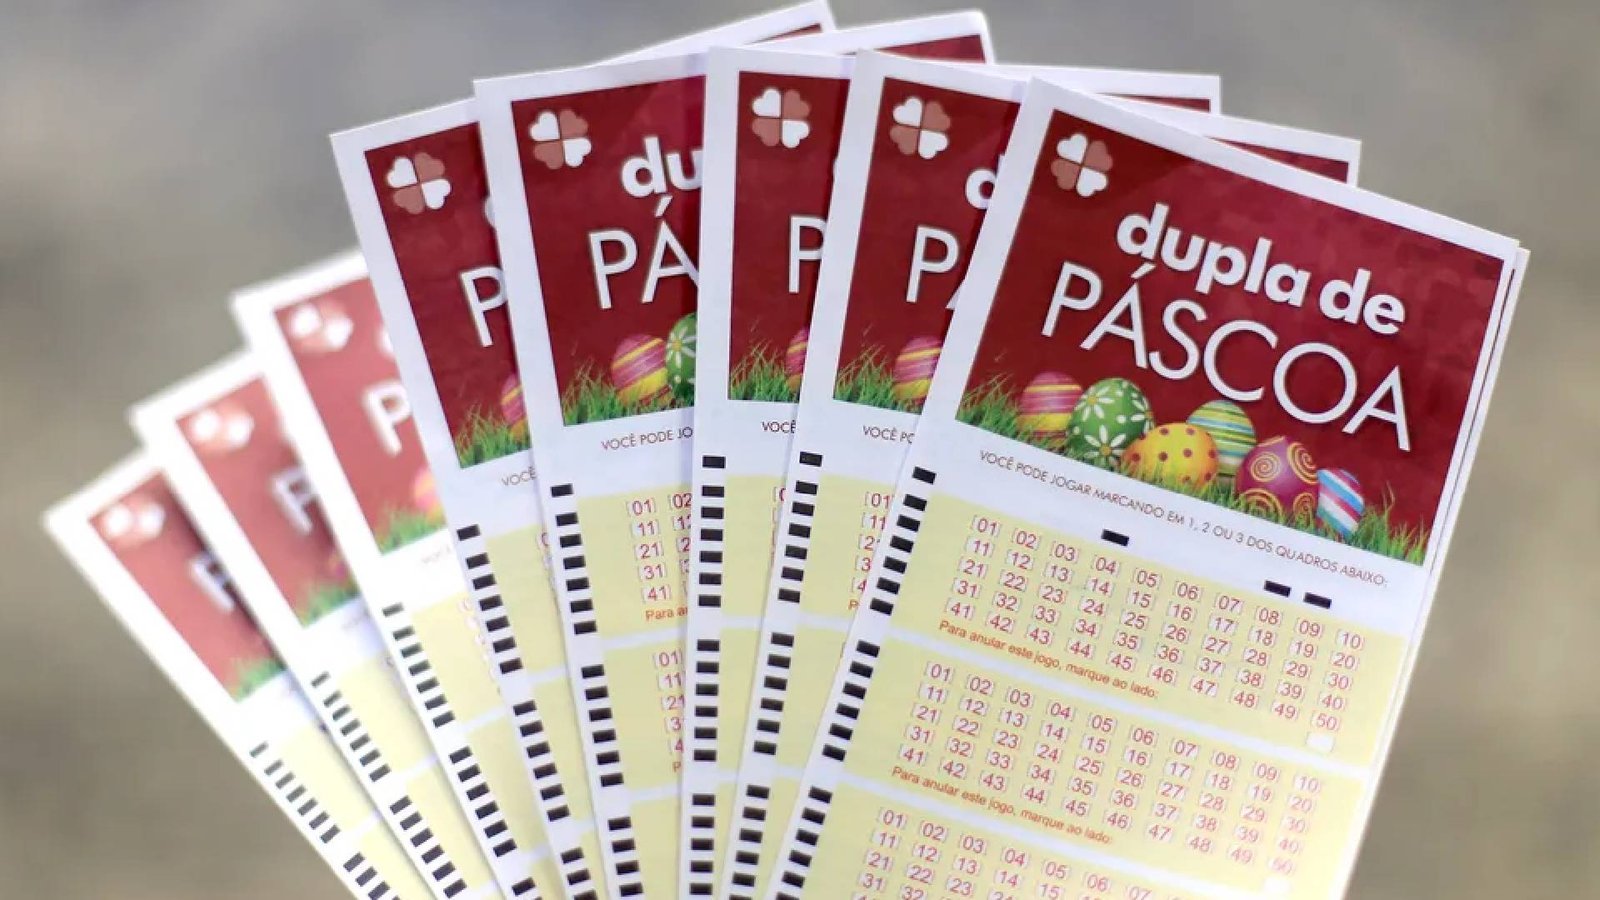 Dupla de Páscoa: loteria especial sorteia R$ 35 milhões neste sábado